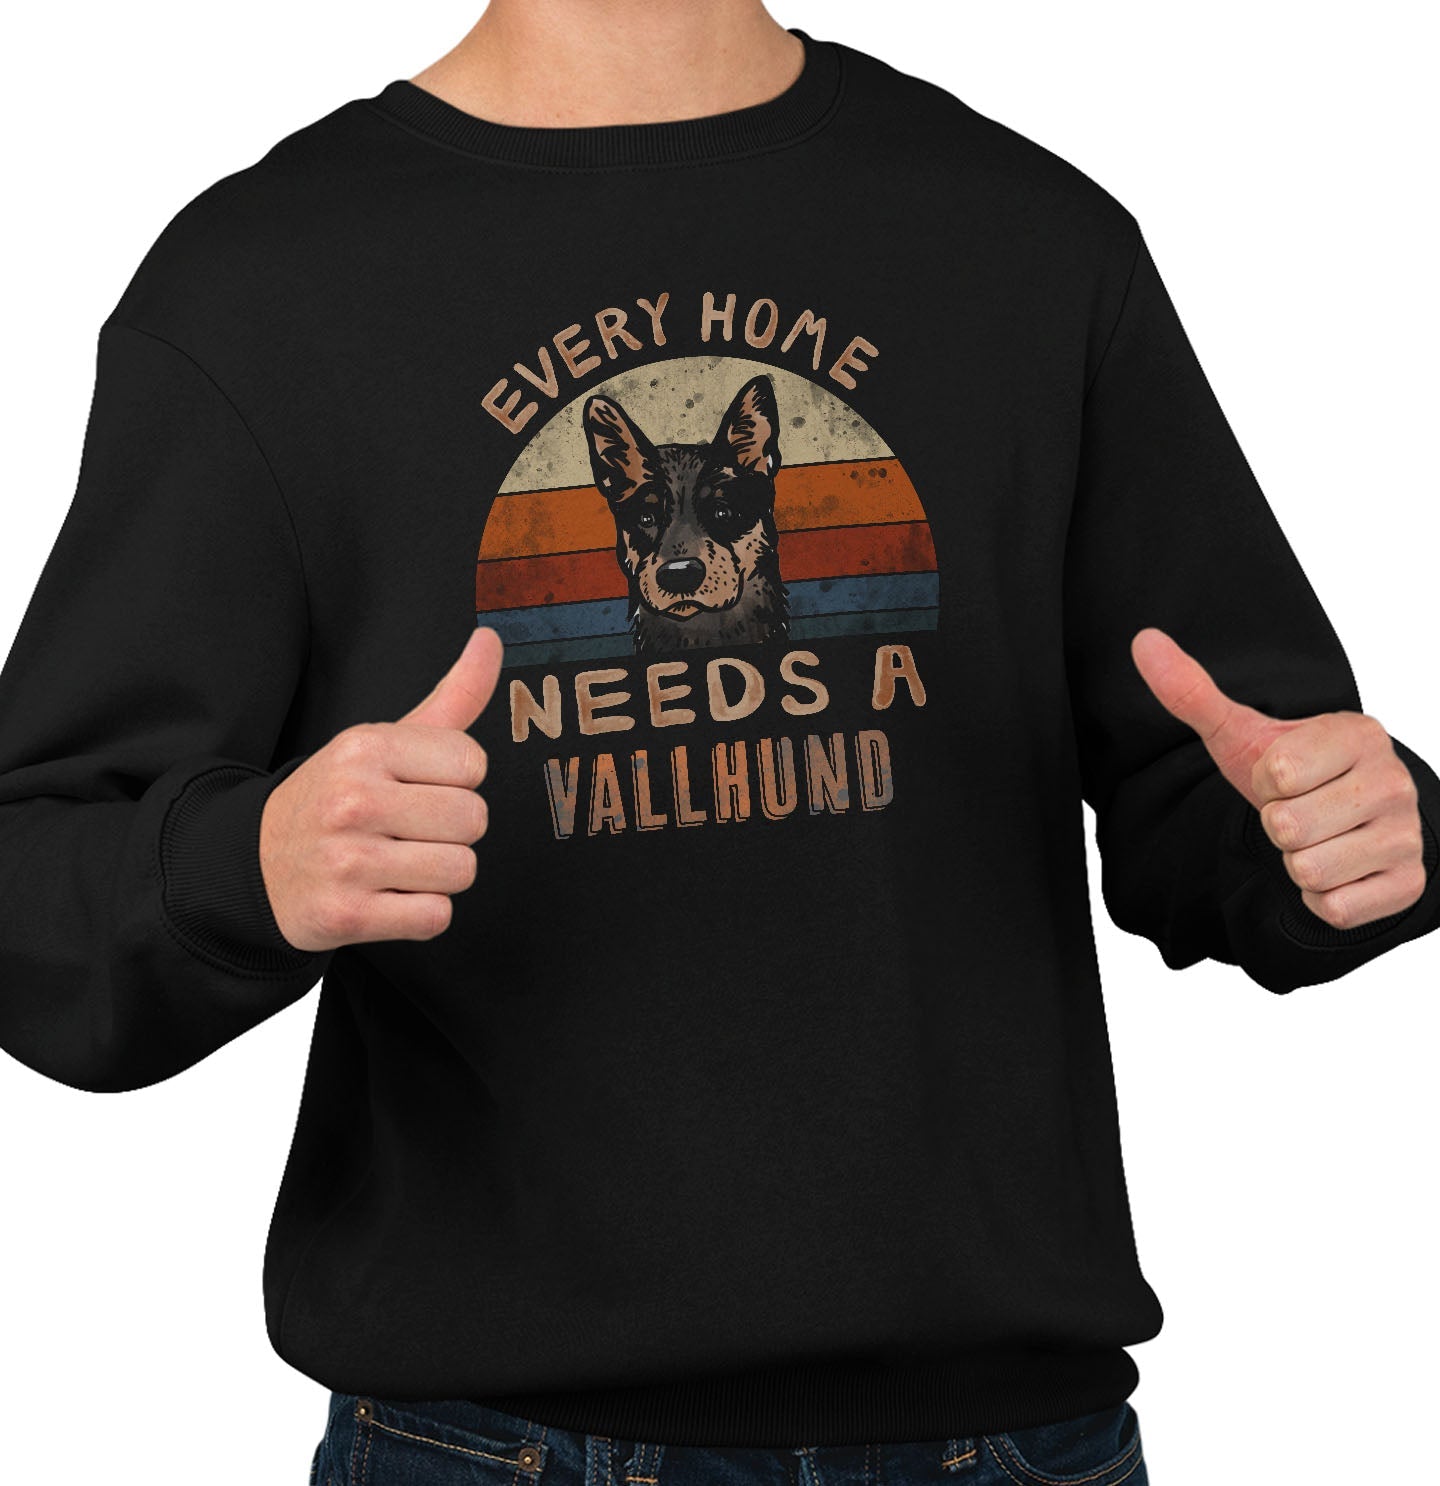 Every Home Needs a Swedish Vallhund - Adult Unisex Crewneck Sweatshirt